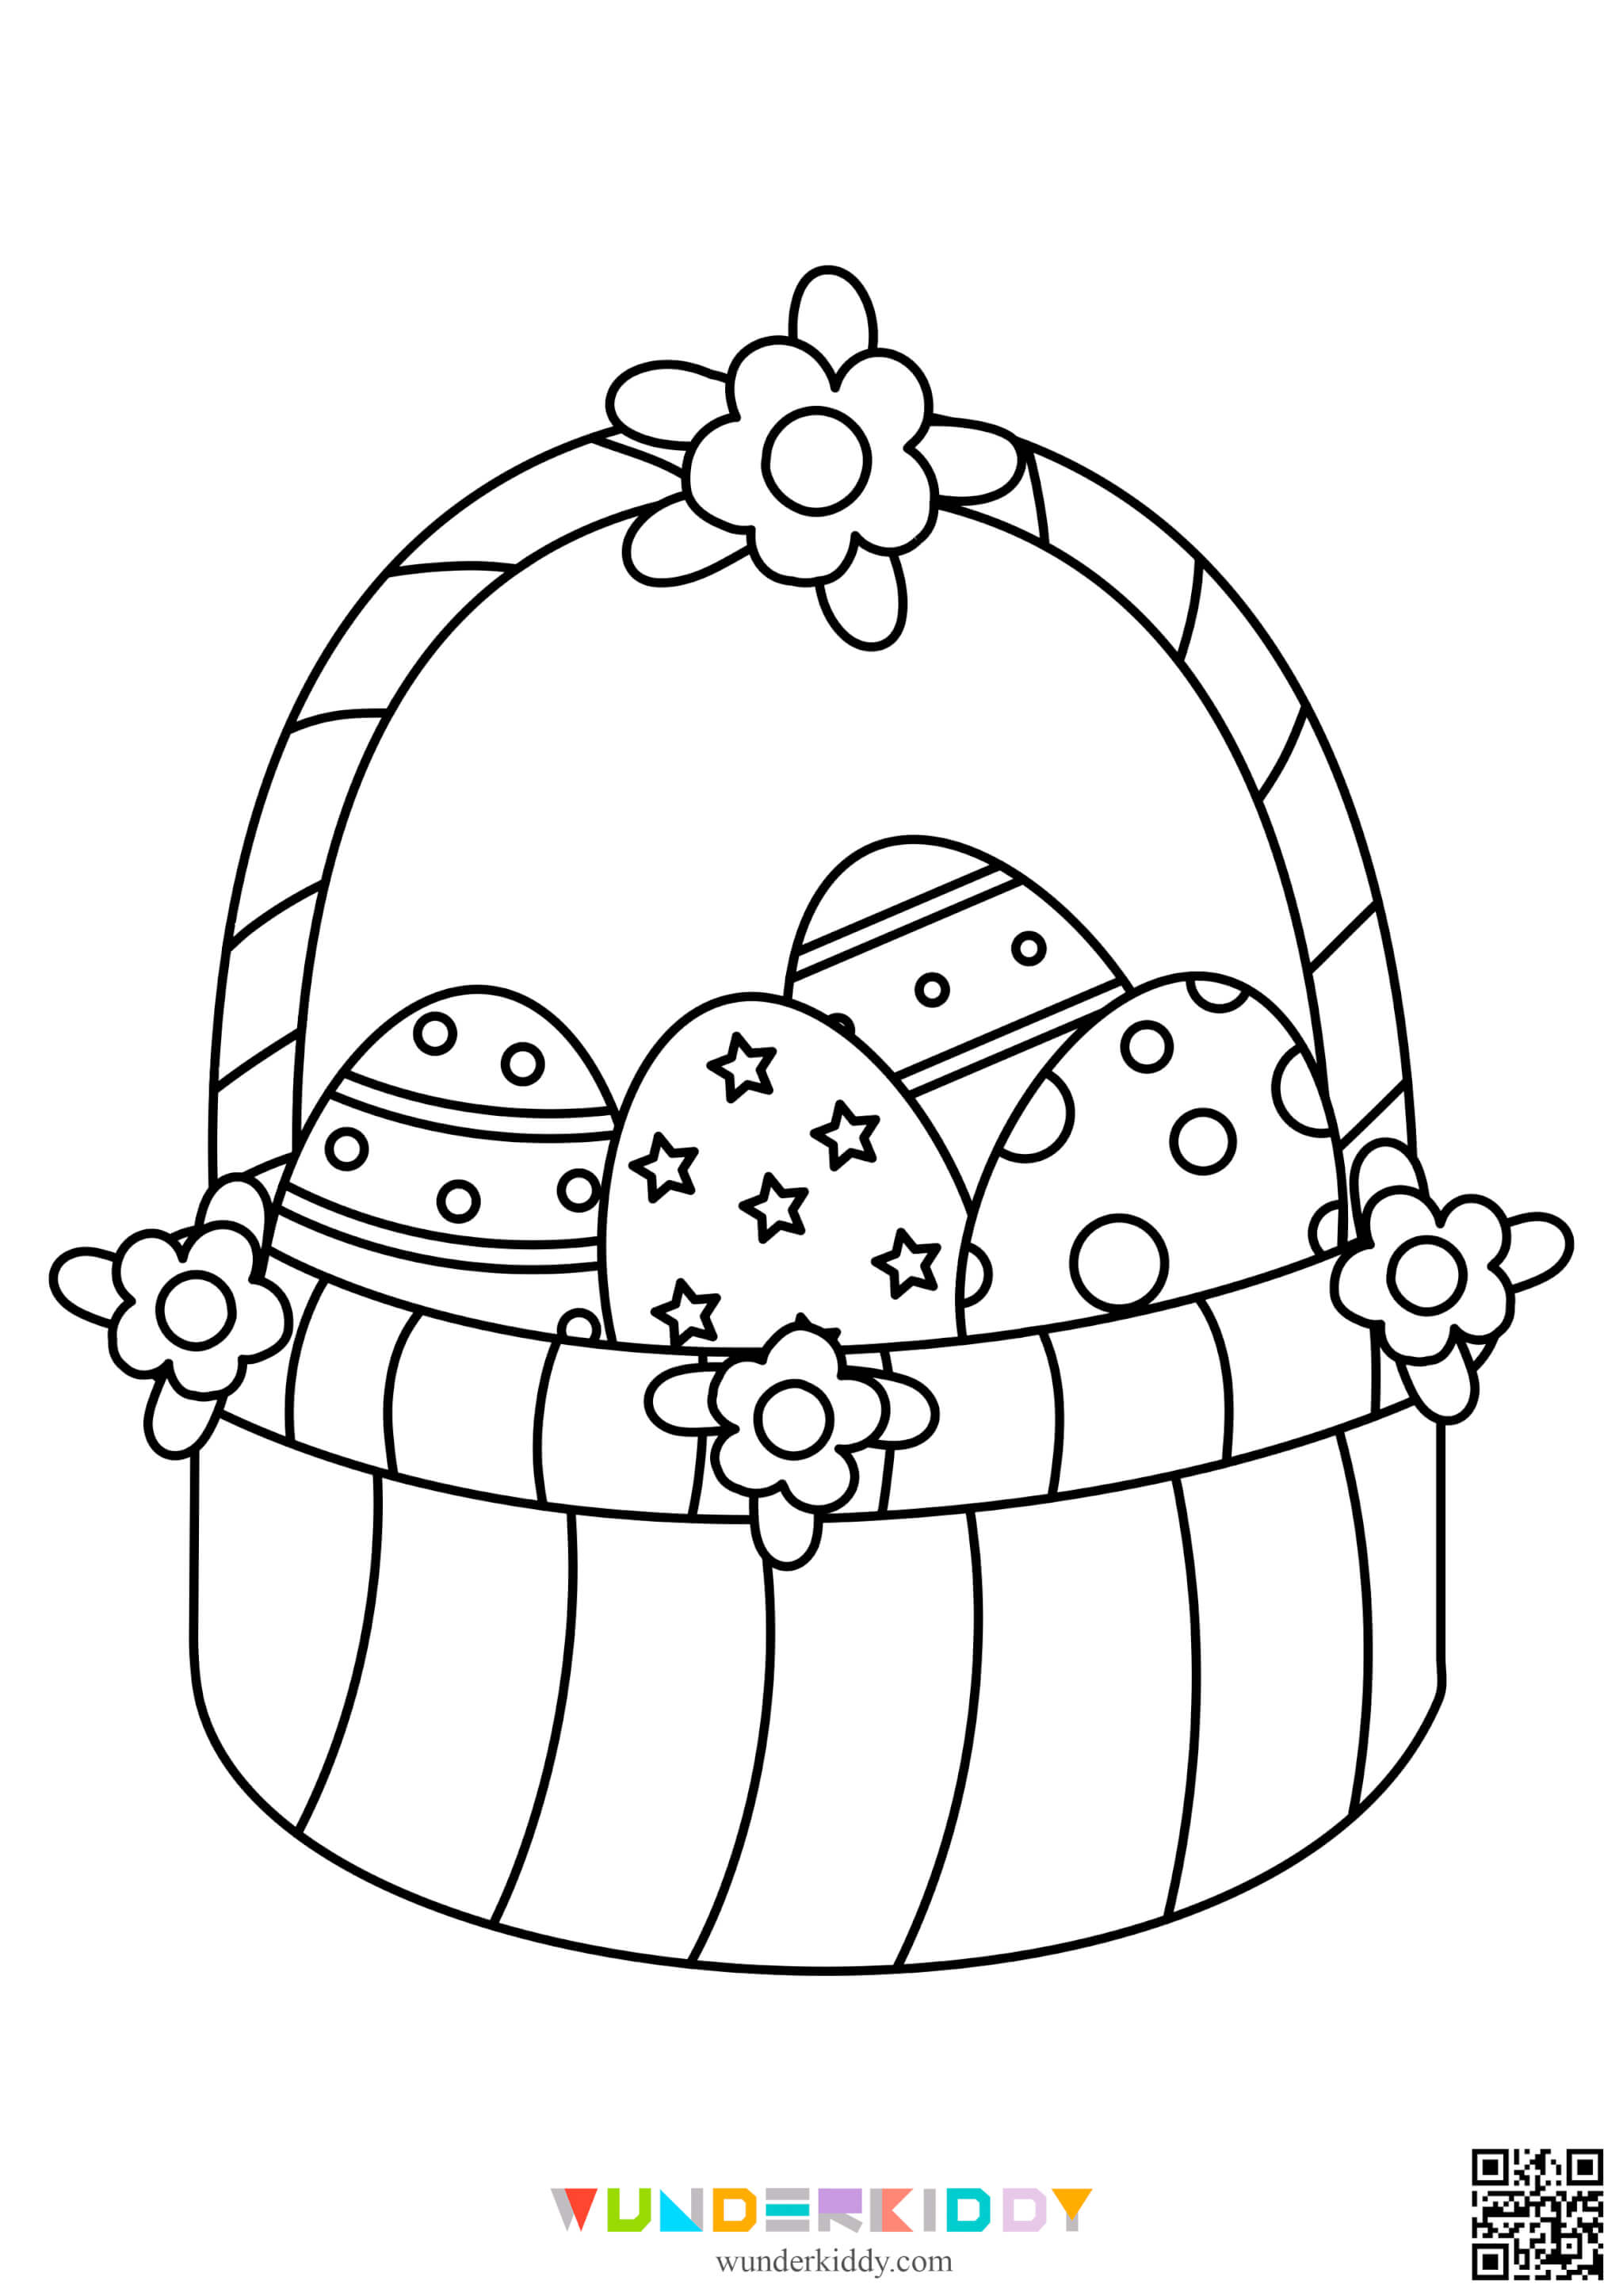 Розмальовки «Великодні яйця» для дітей - Зображення 13